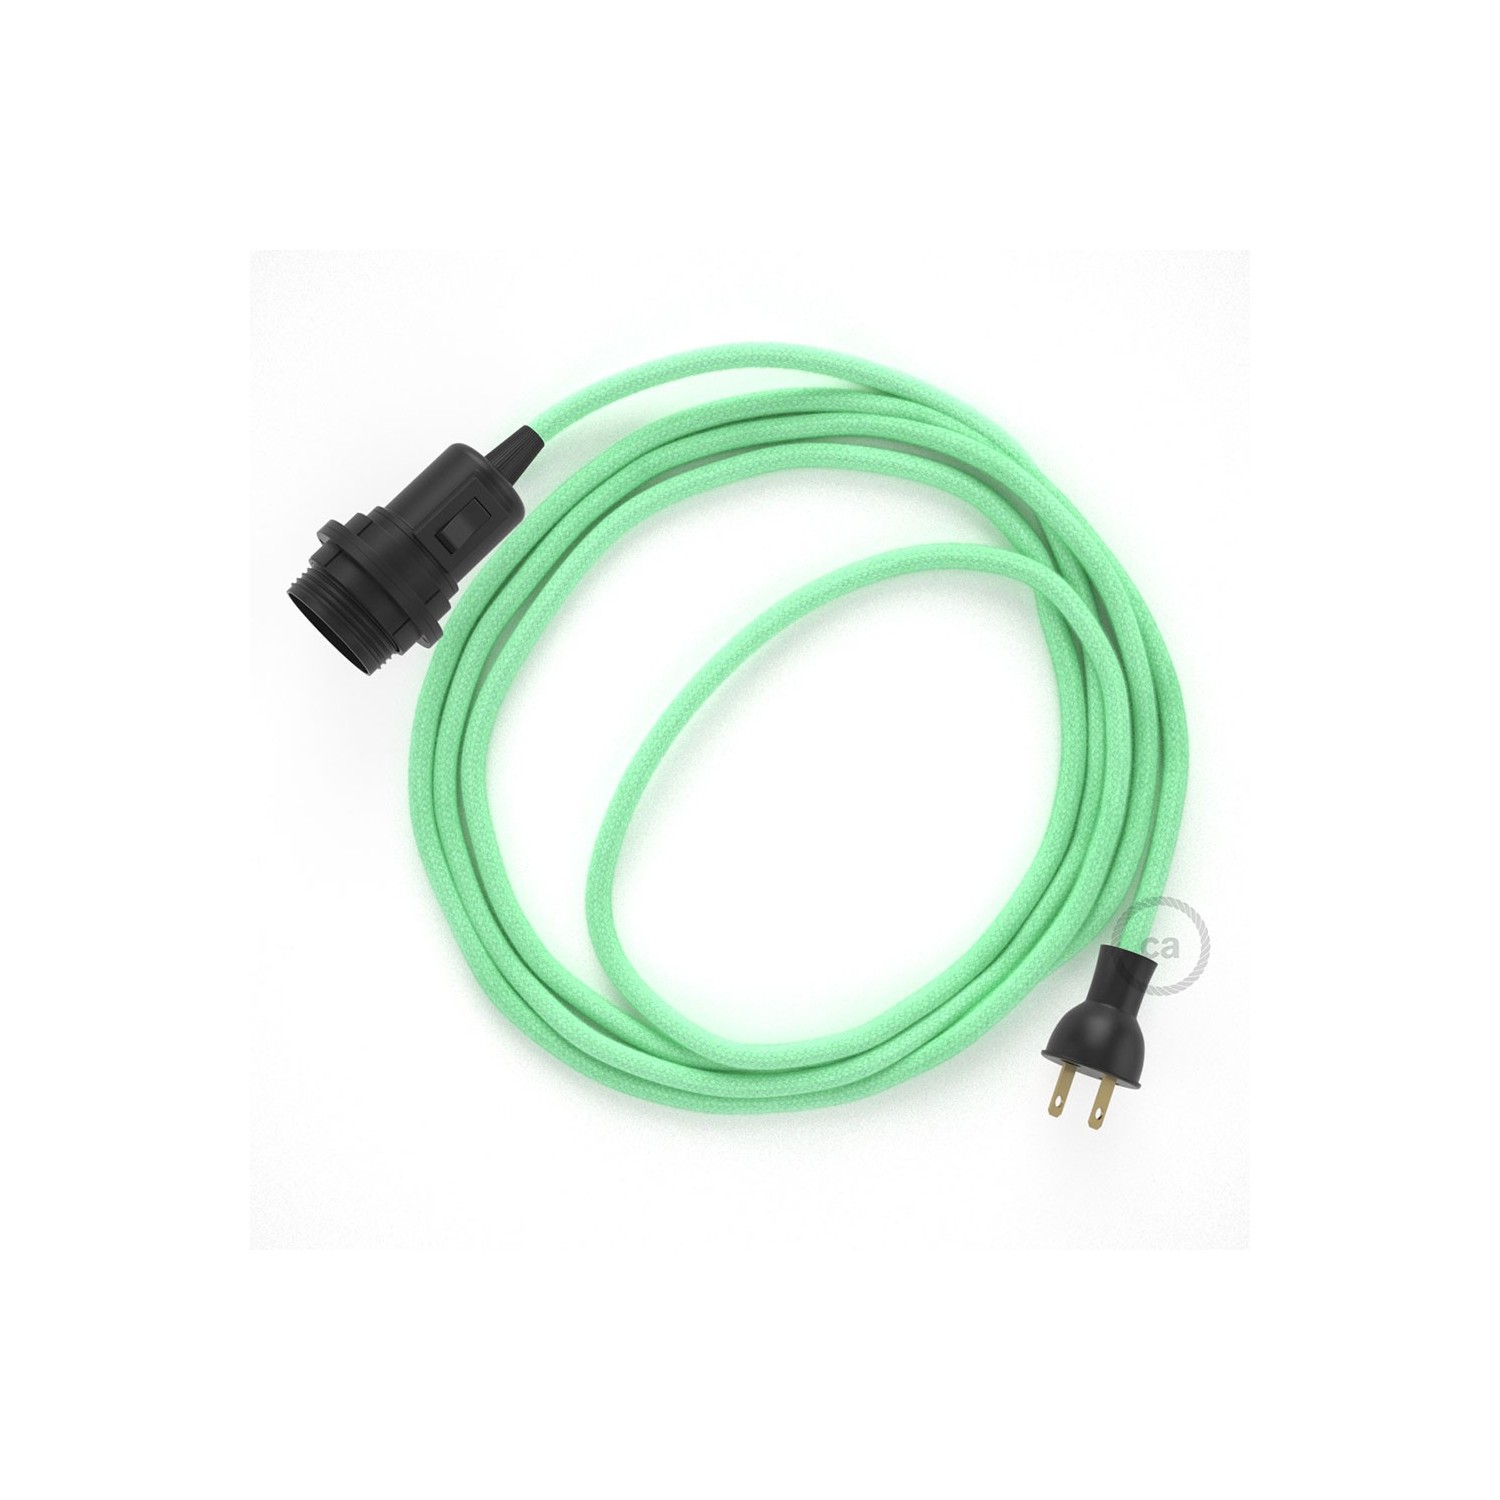 Crea tu Snake para pantalla con cable de Algodón Verde Menta RC34, socket y enchufe, y trae la luz donde tu quieras.